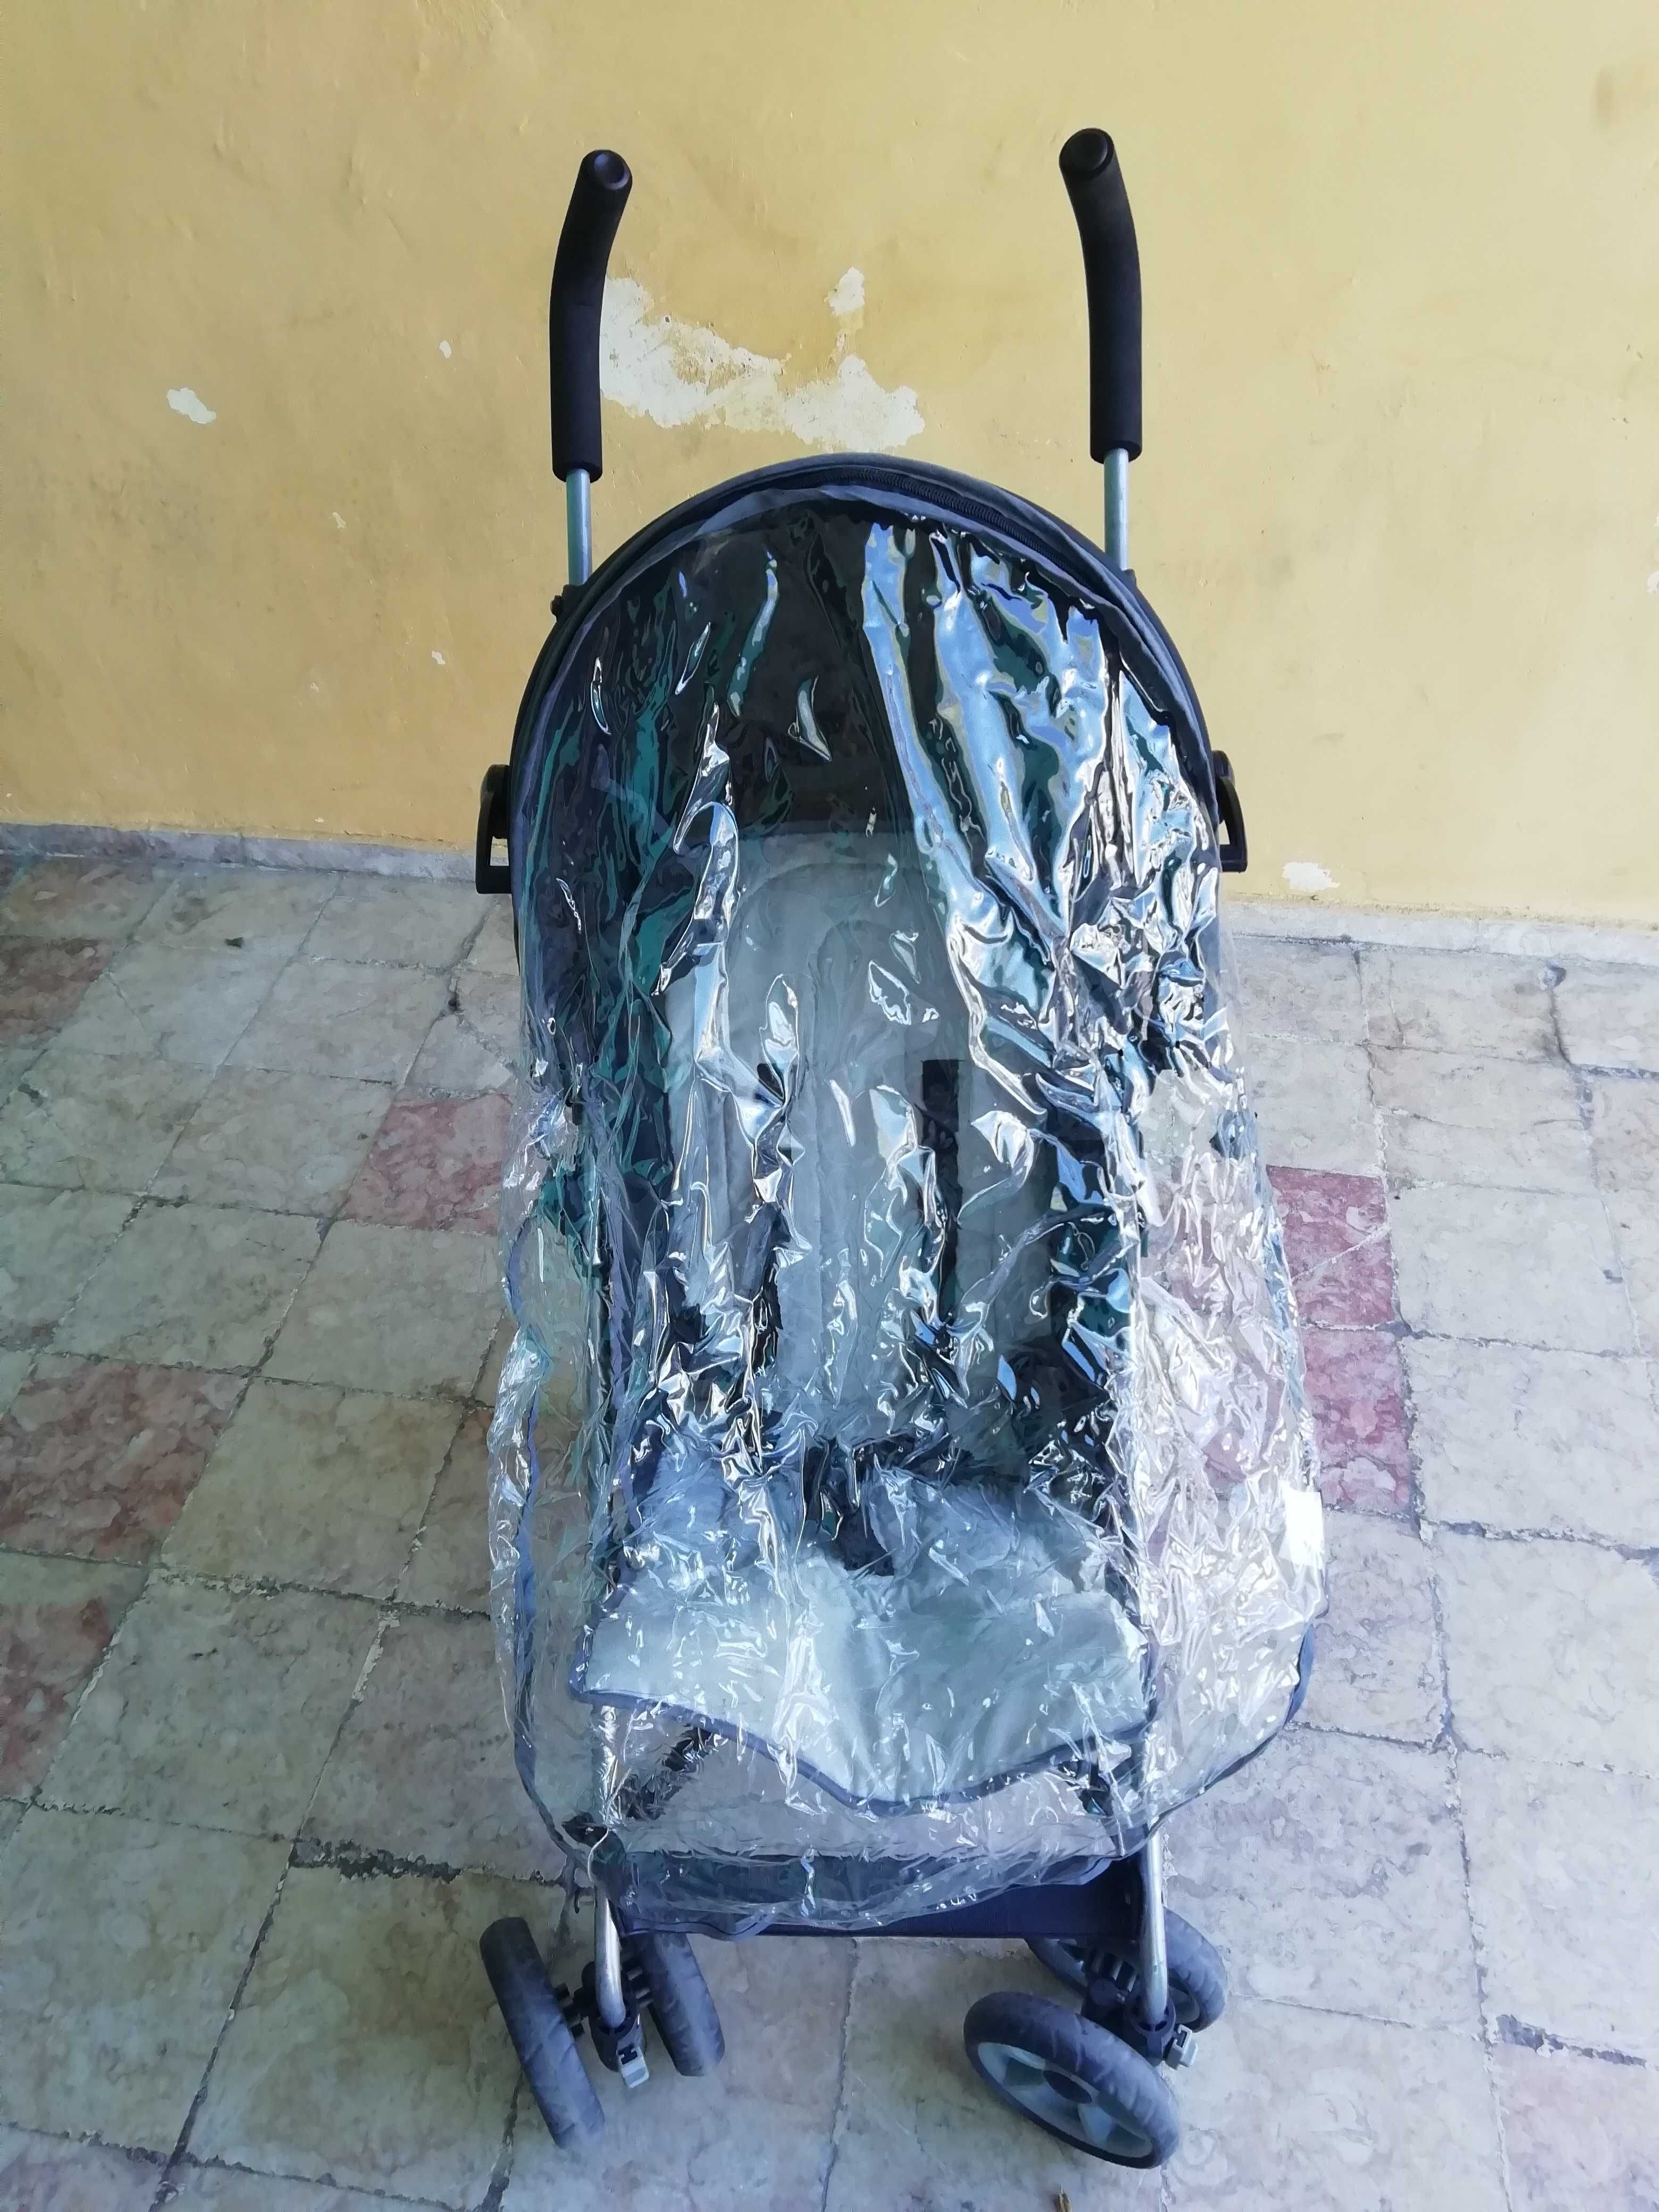 Carro de bebé com protecção.